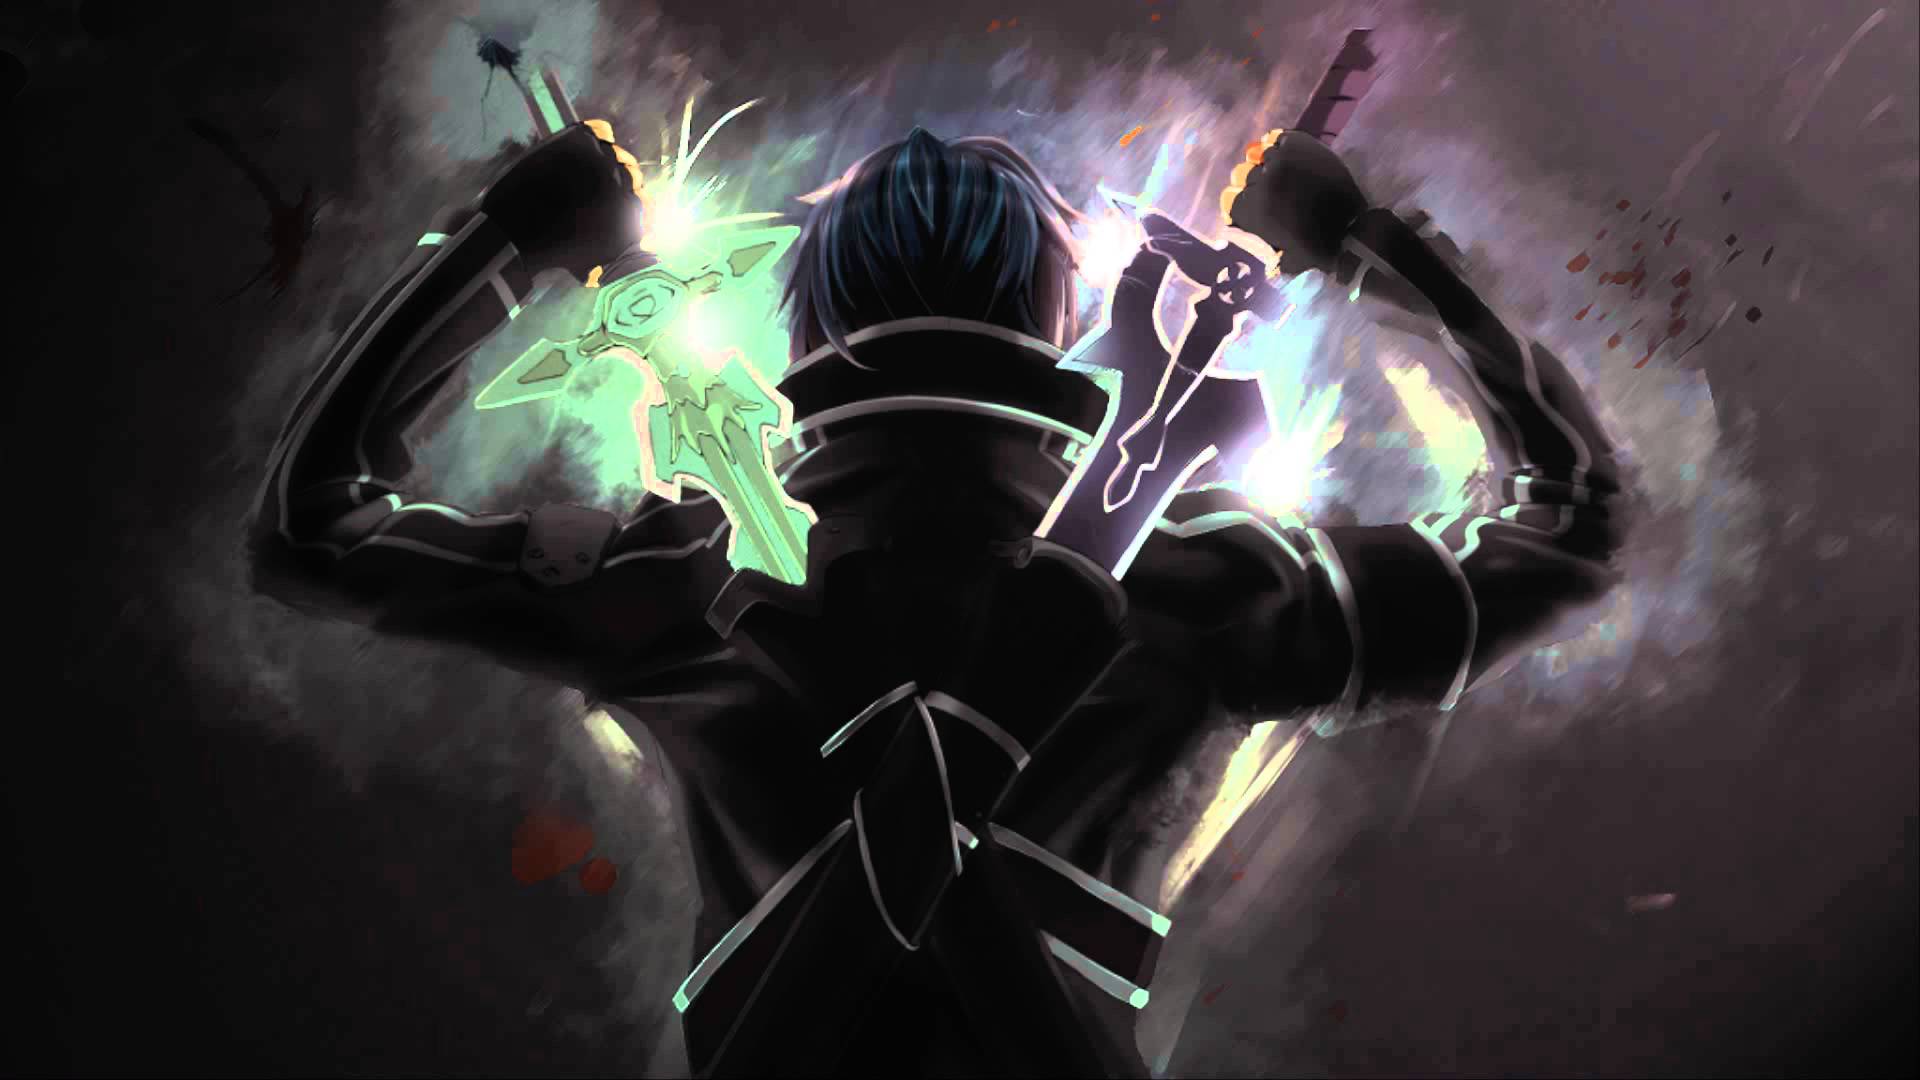 Luminous Sword Art Online Music Extended